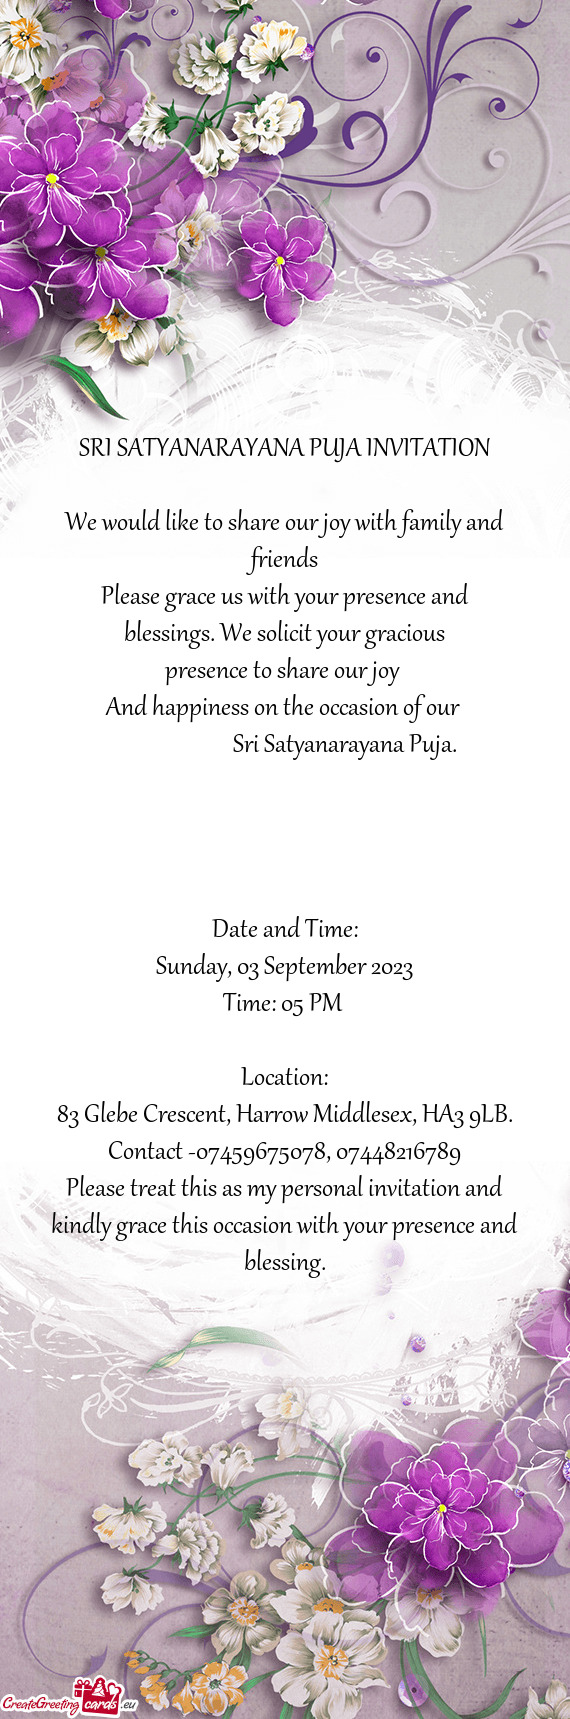 SRI SATYANARAYANA PUJA INVITATION